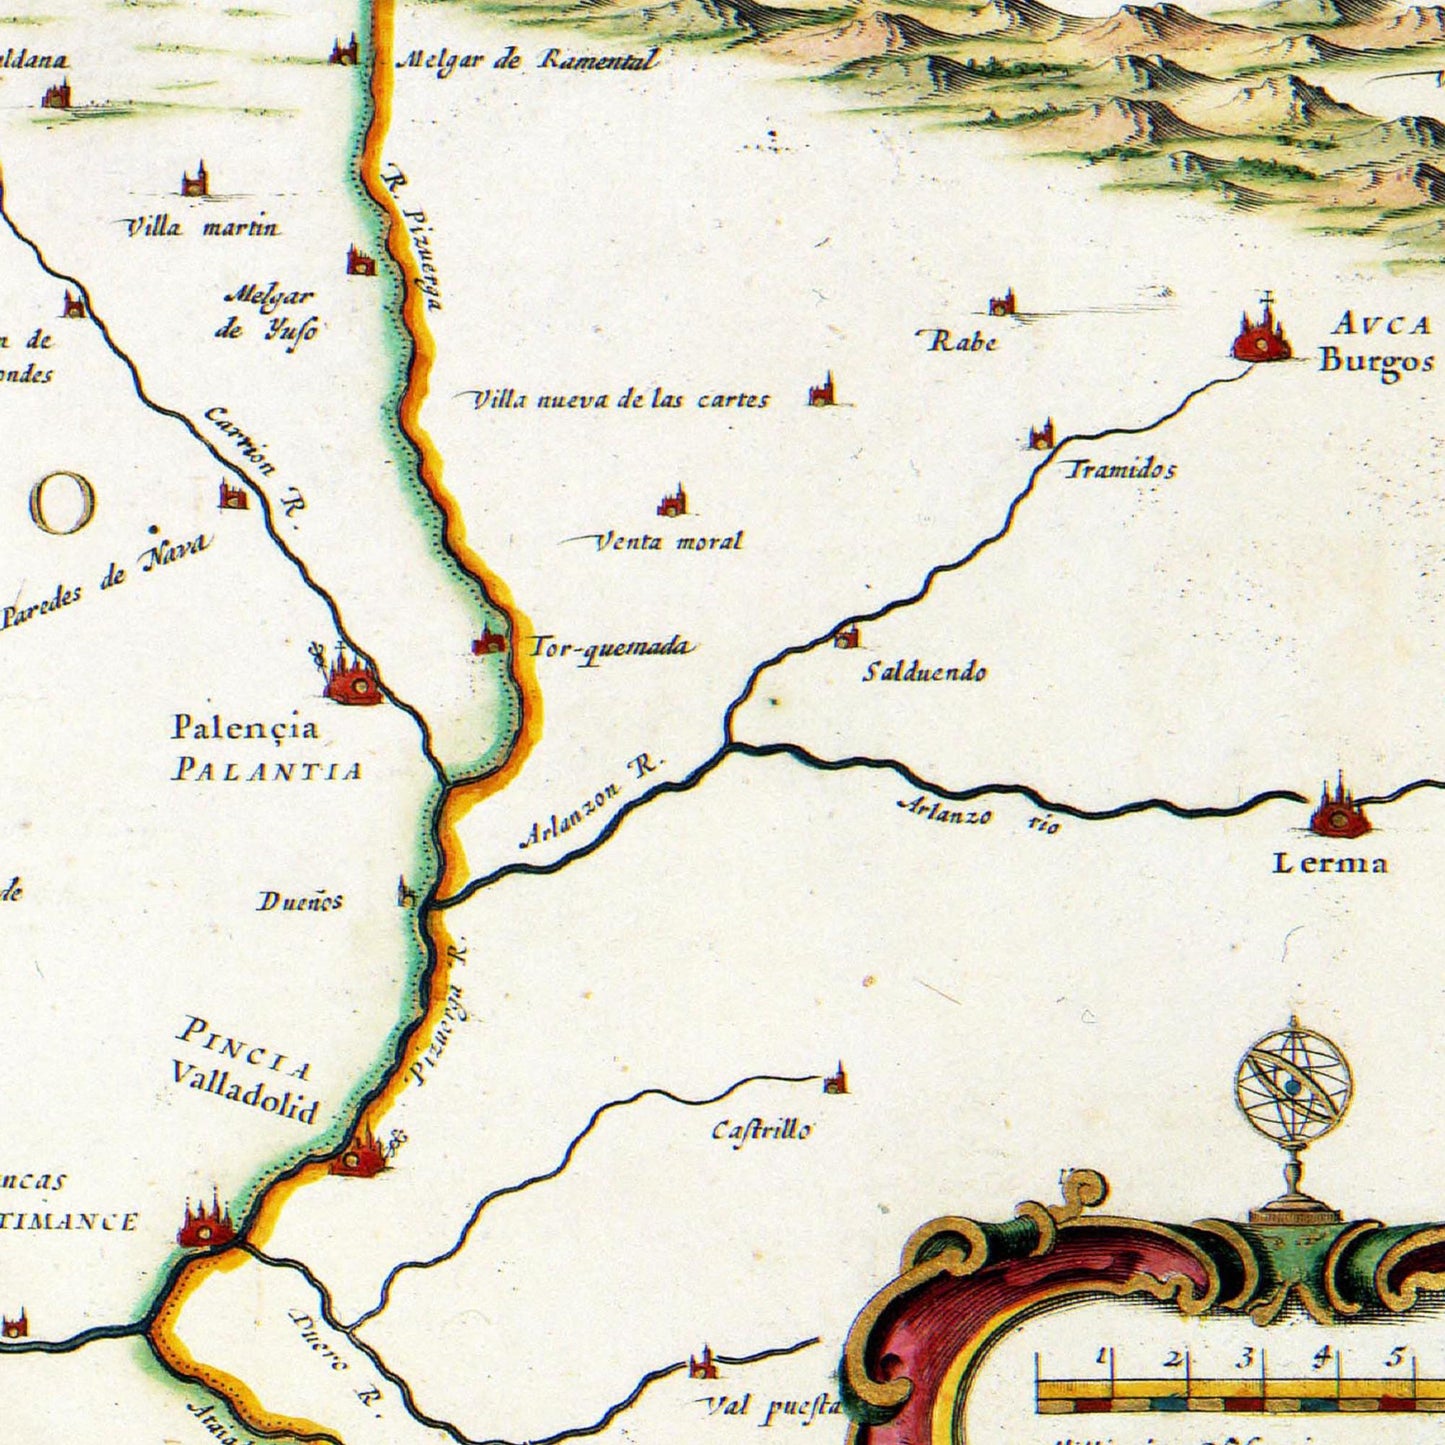 Historische Landkarte Asturien um 1690